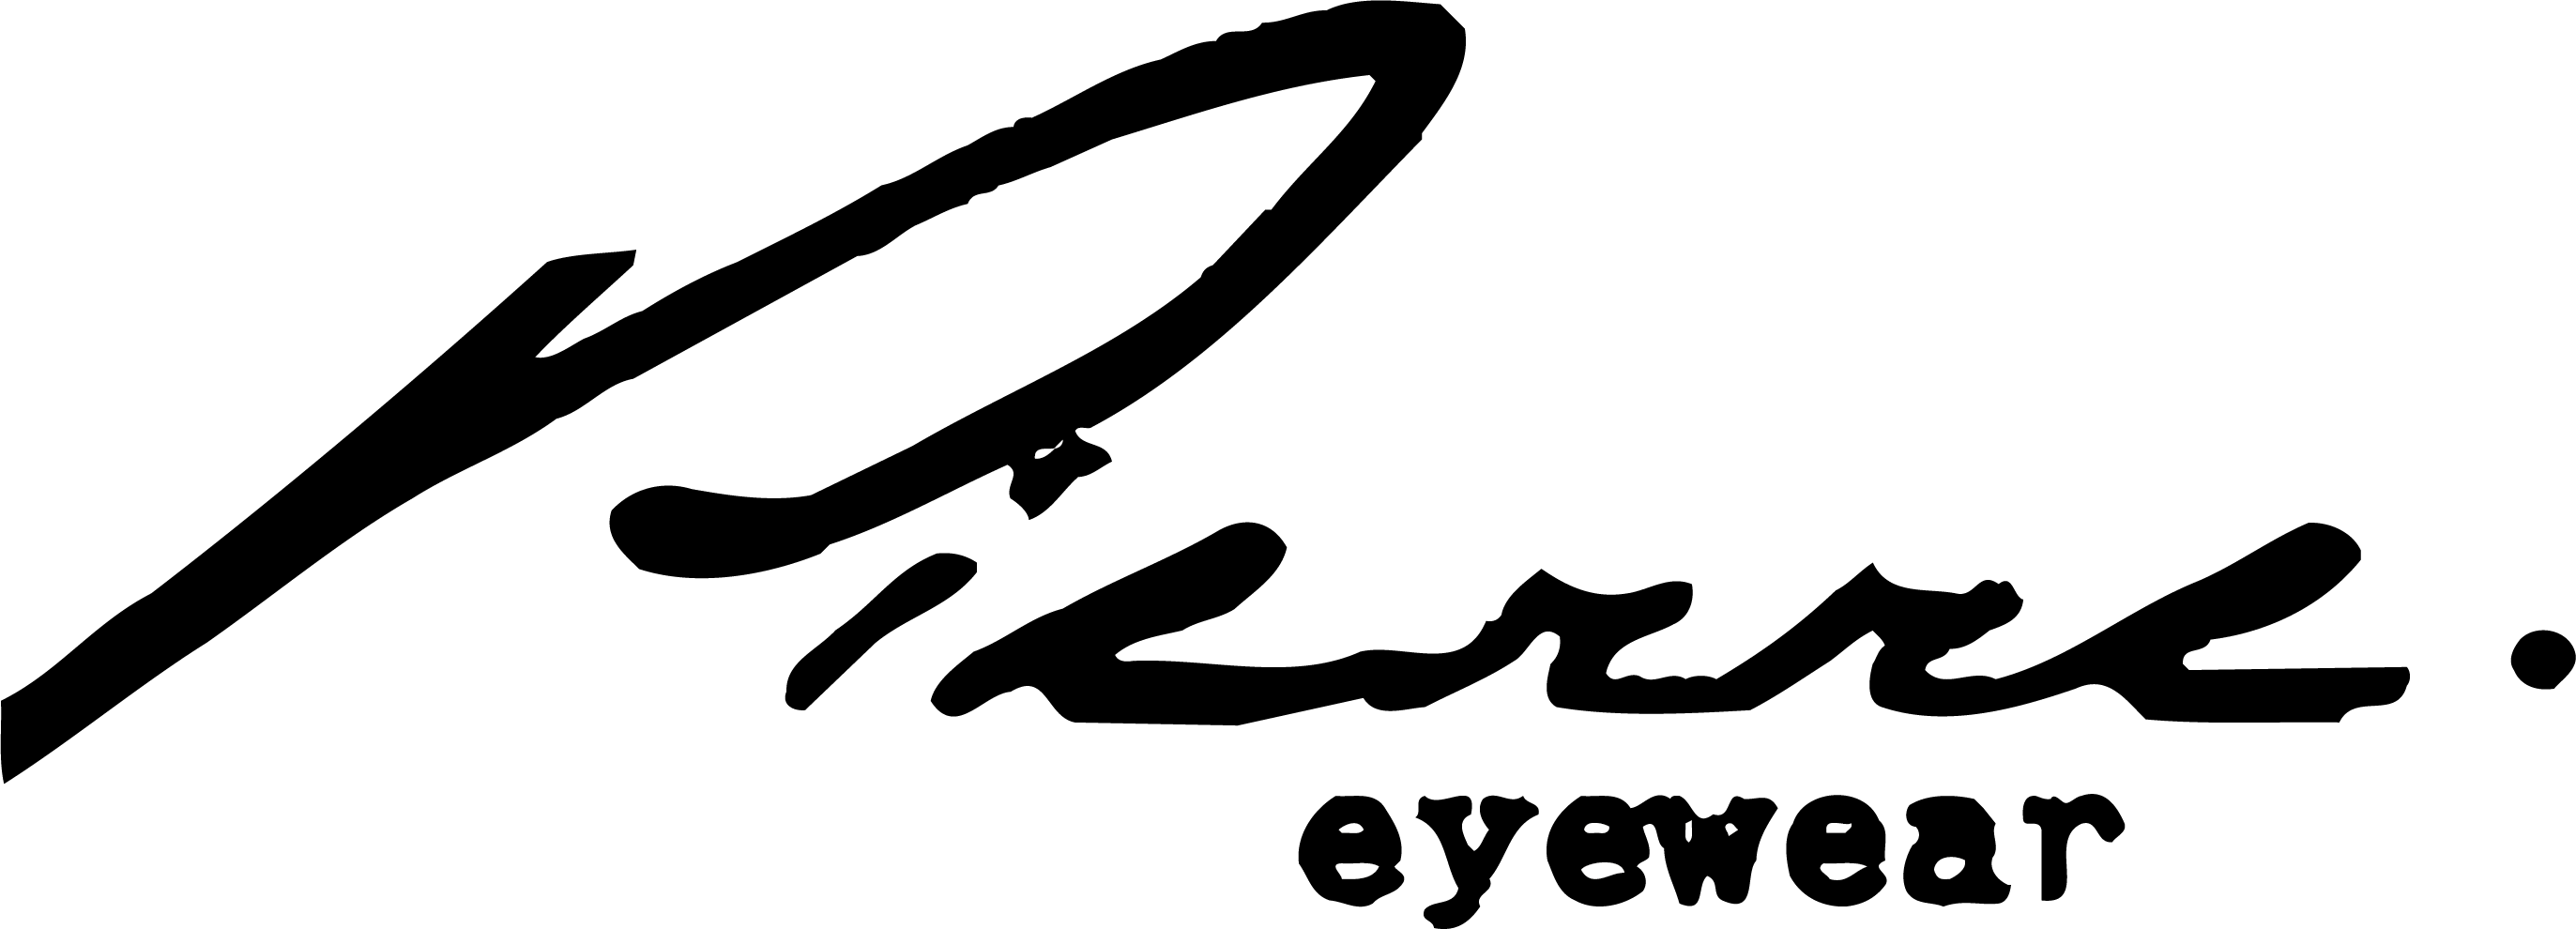 Eyewear Logo - Pierre Eyewear